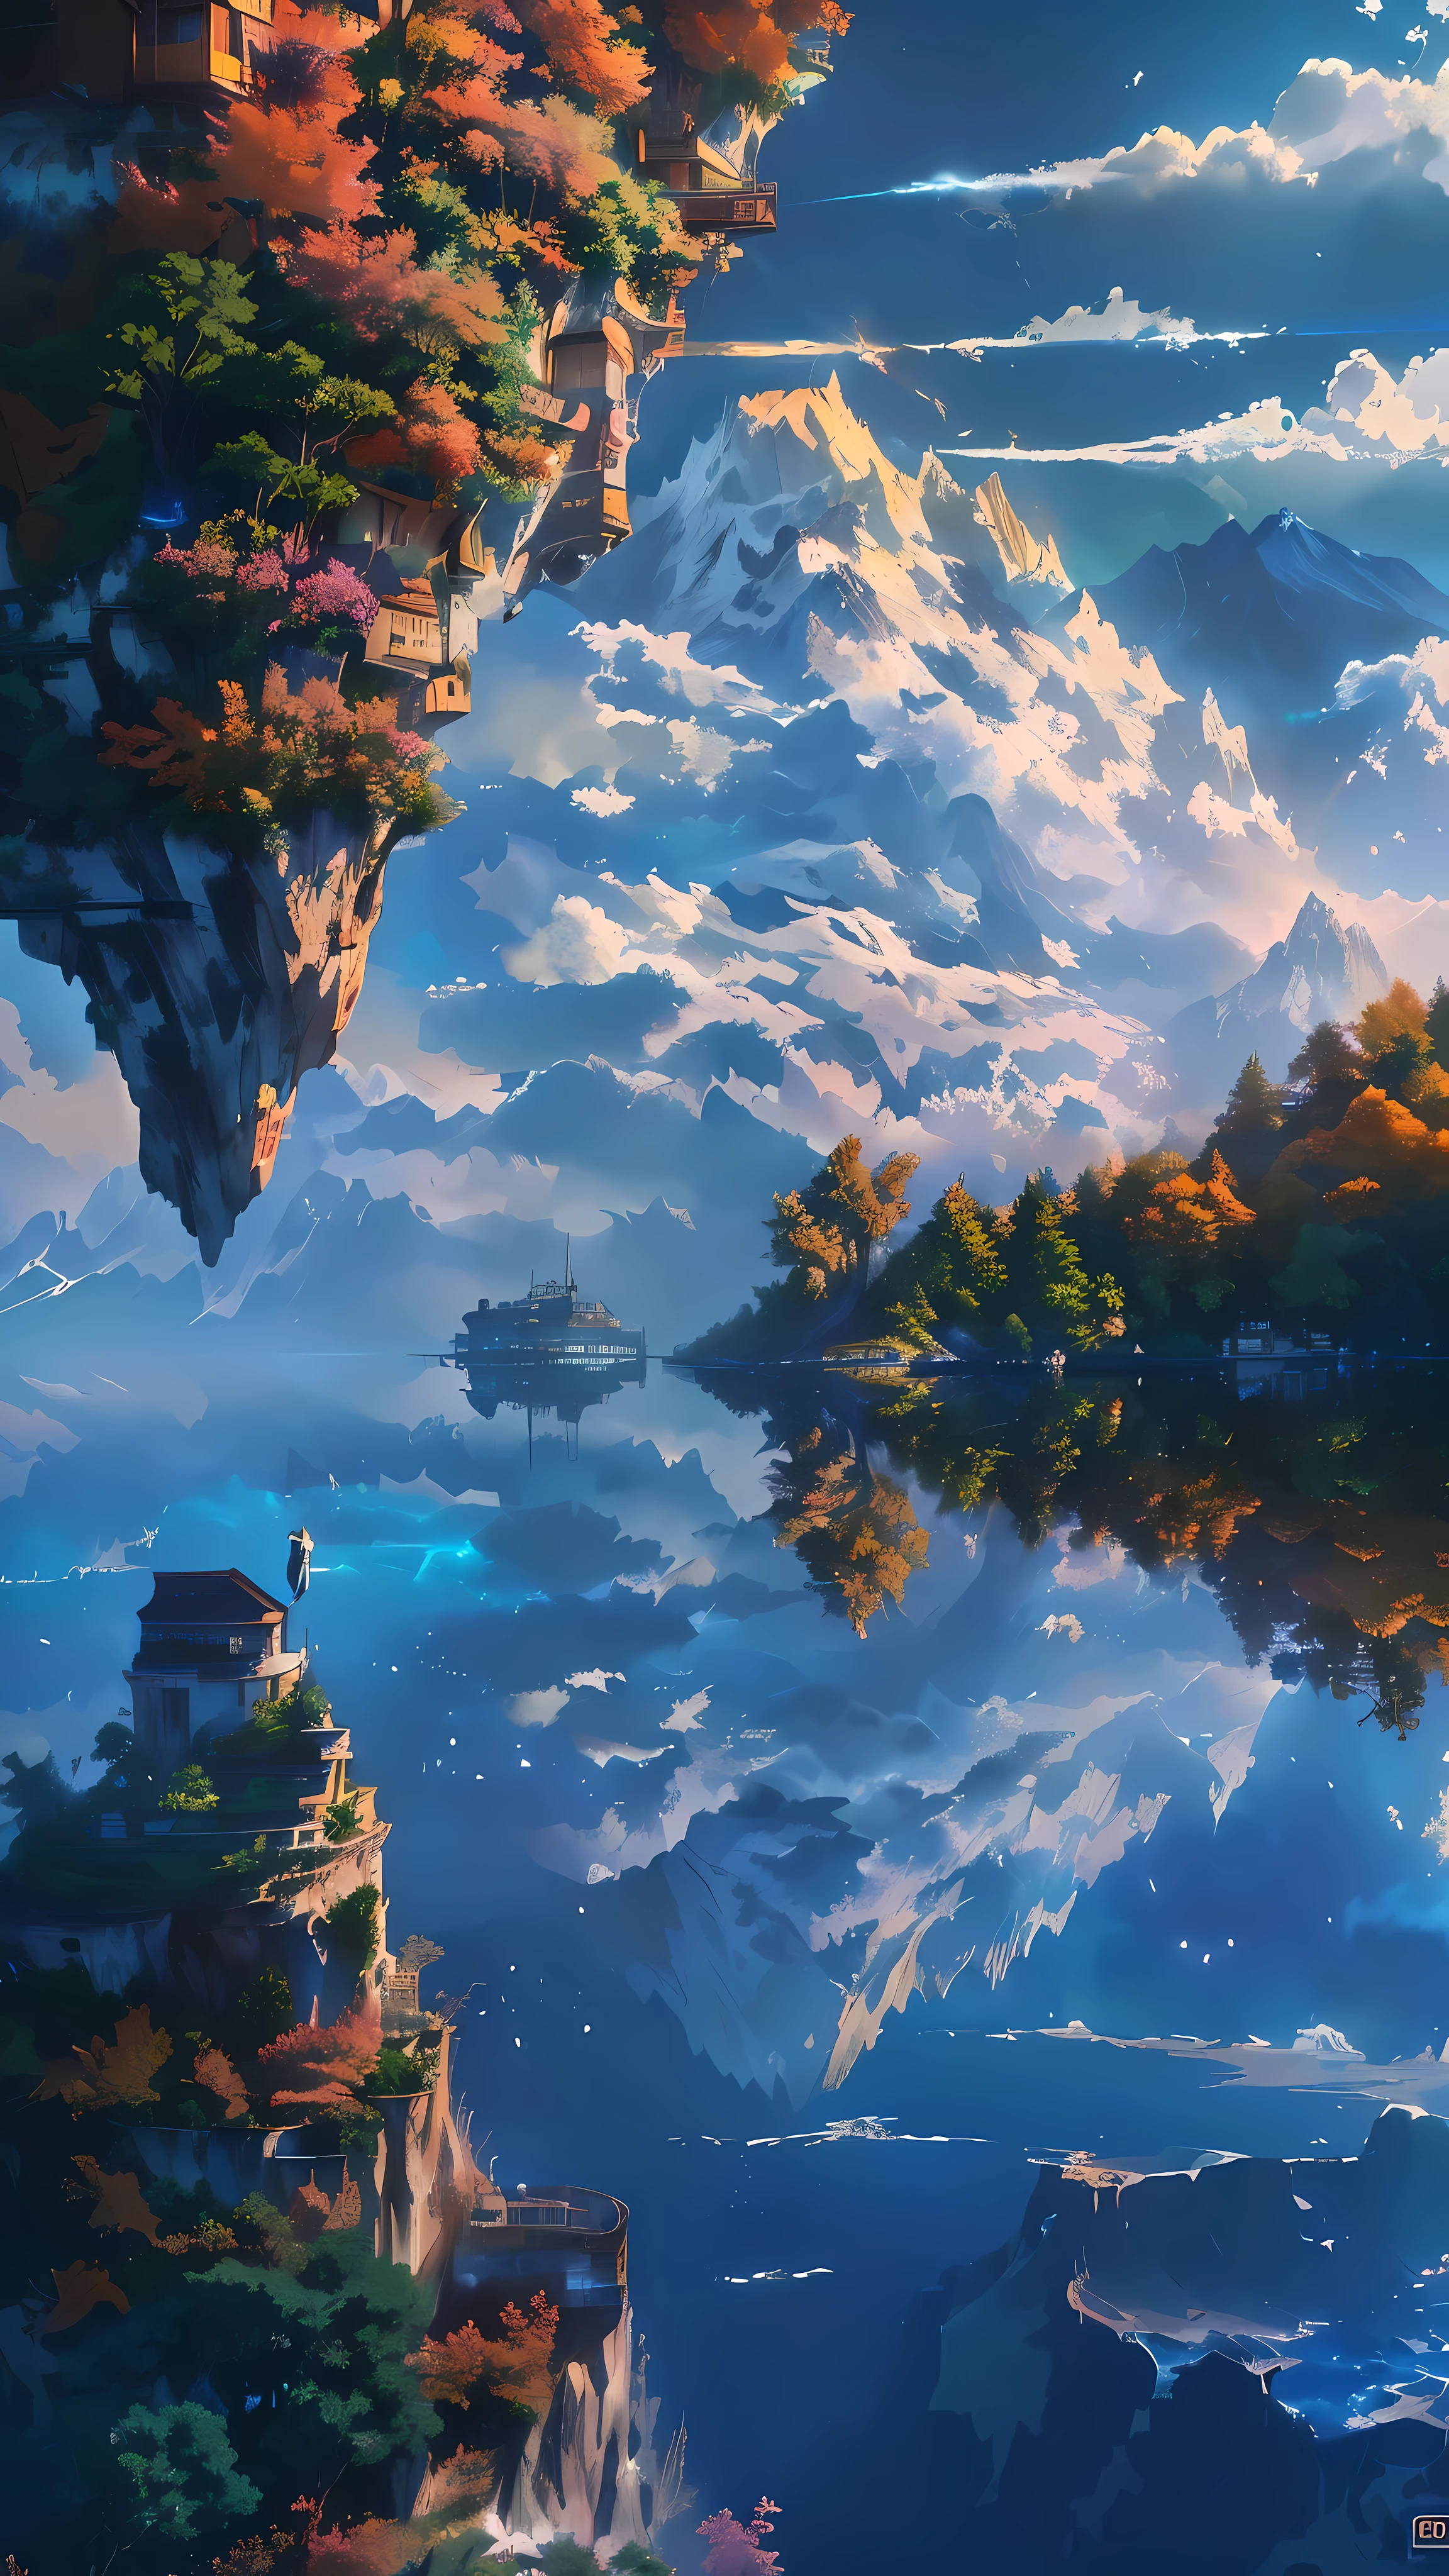 Es gibt ein Bild von einem Berg mit einem See darin, 4K hochdetaillierte digitale Kunst, schwebende Berge, Detaillierte digitale Kunst in 4K, detaillierte Landschaft — Breite 672, 4 k HD-Hintergrundbild sehr detailliert, wunderschöne, detaillierte Pixelkunst, detaillierte Traumlandschaft, Insel, die im Himmel schwebt, 8k hochwertige, detaillierte Kunst, schwebende Insel im Himmel, unglaublich detailreich, Makoto Shinkai Cyril Rolando, Cyril Rolando und Goro Fujita, tolle Tapete, Insel, die im Himmel schwebt, Traumlandschaftskunst, inspiriert von Cyril Rolando, Cyril Rolando und M.w kaluta, Cyril Rolando und M. w kaluta